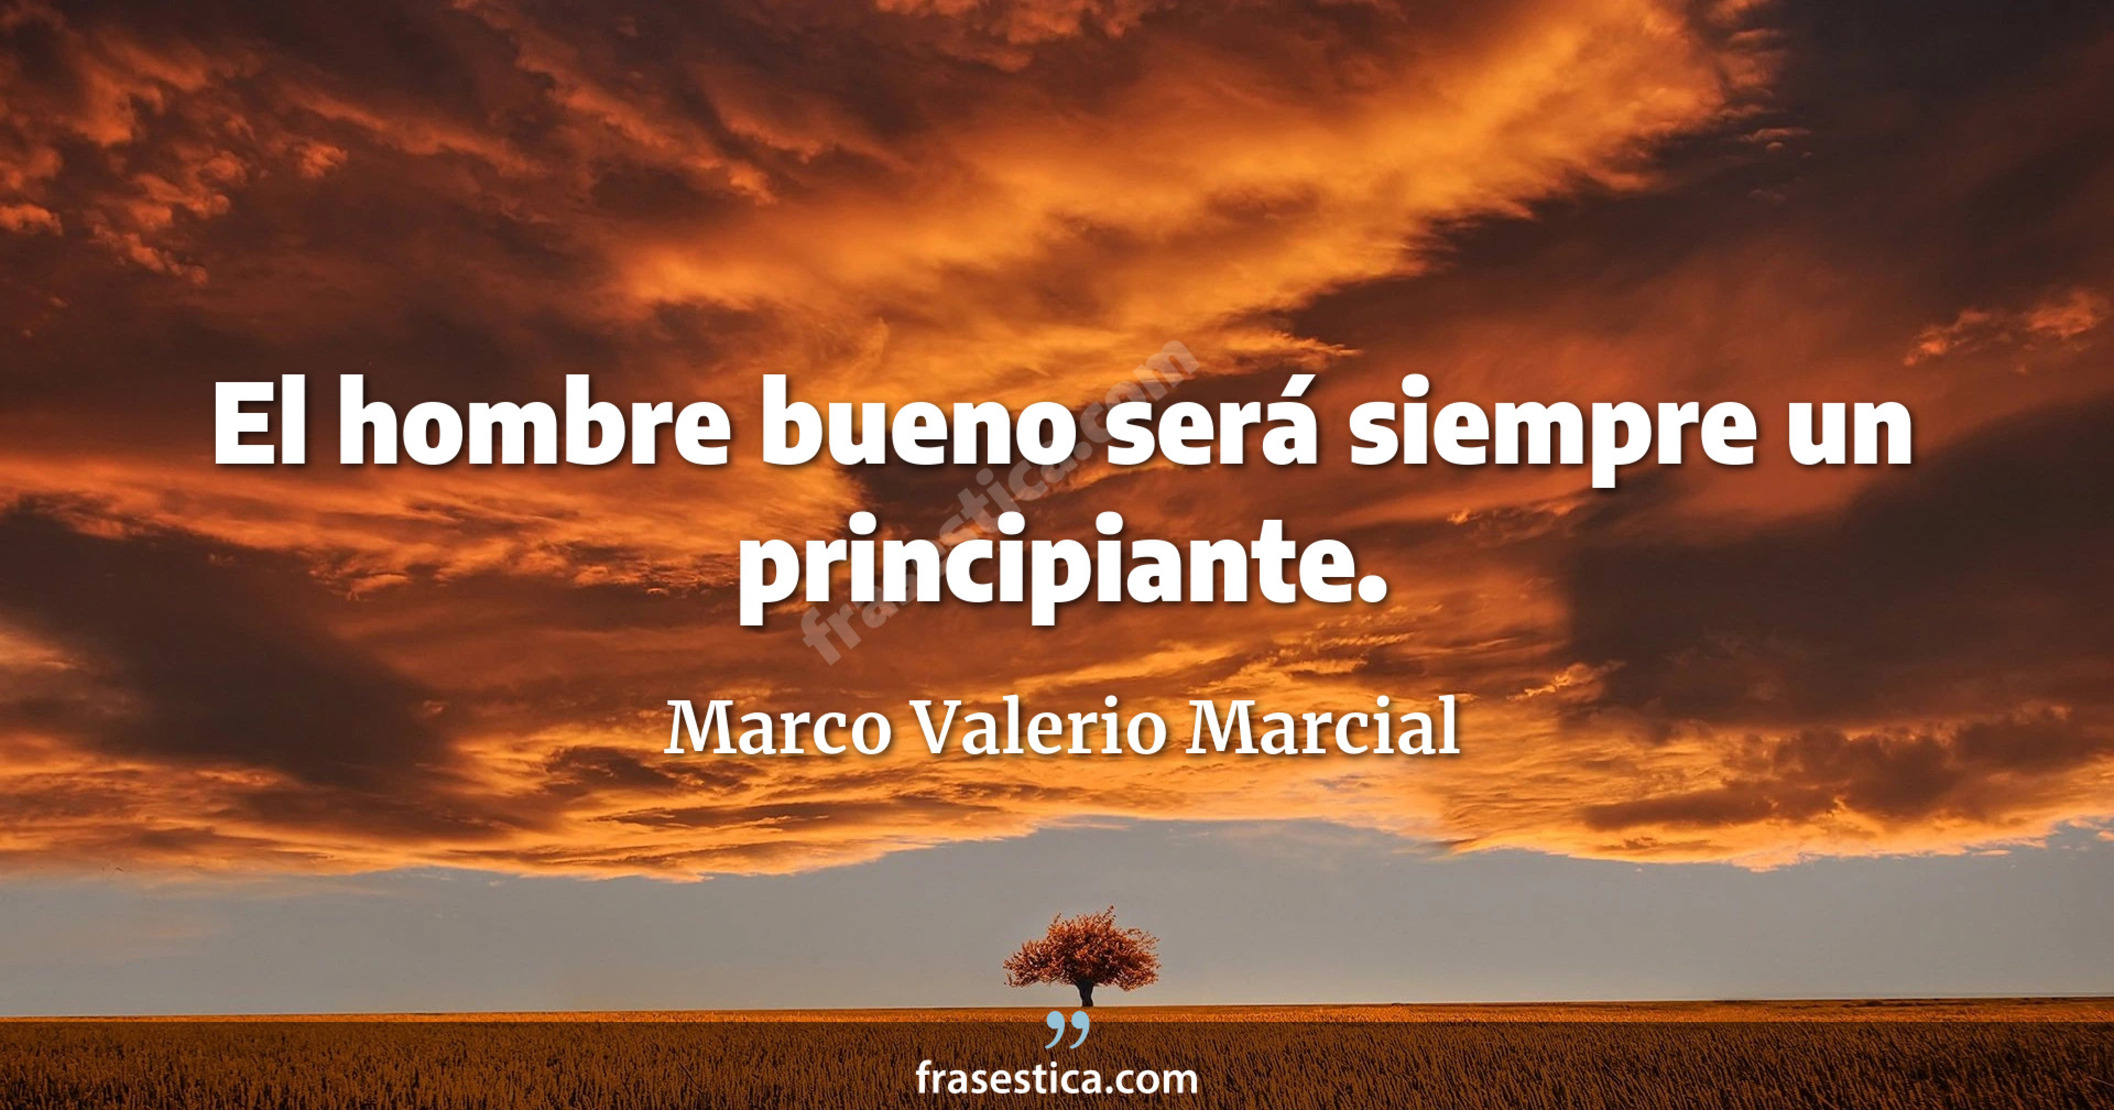 El hombre bueno será siempre un principiante. - Marco Valerio Marcial